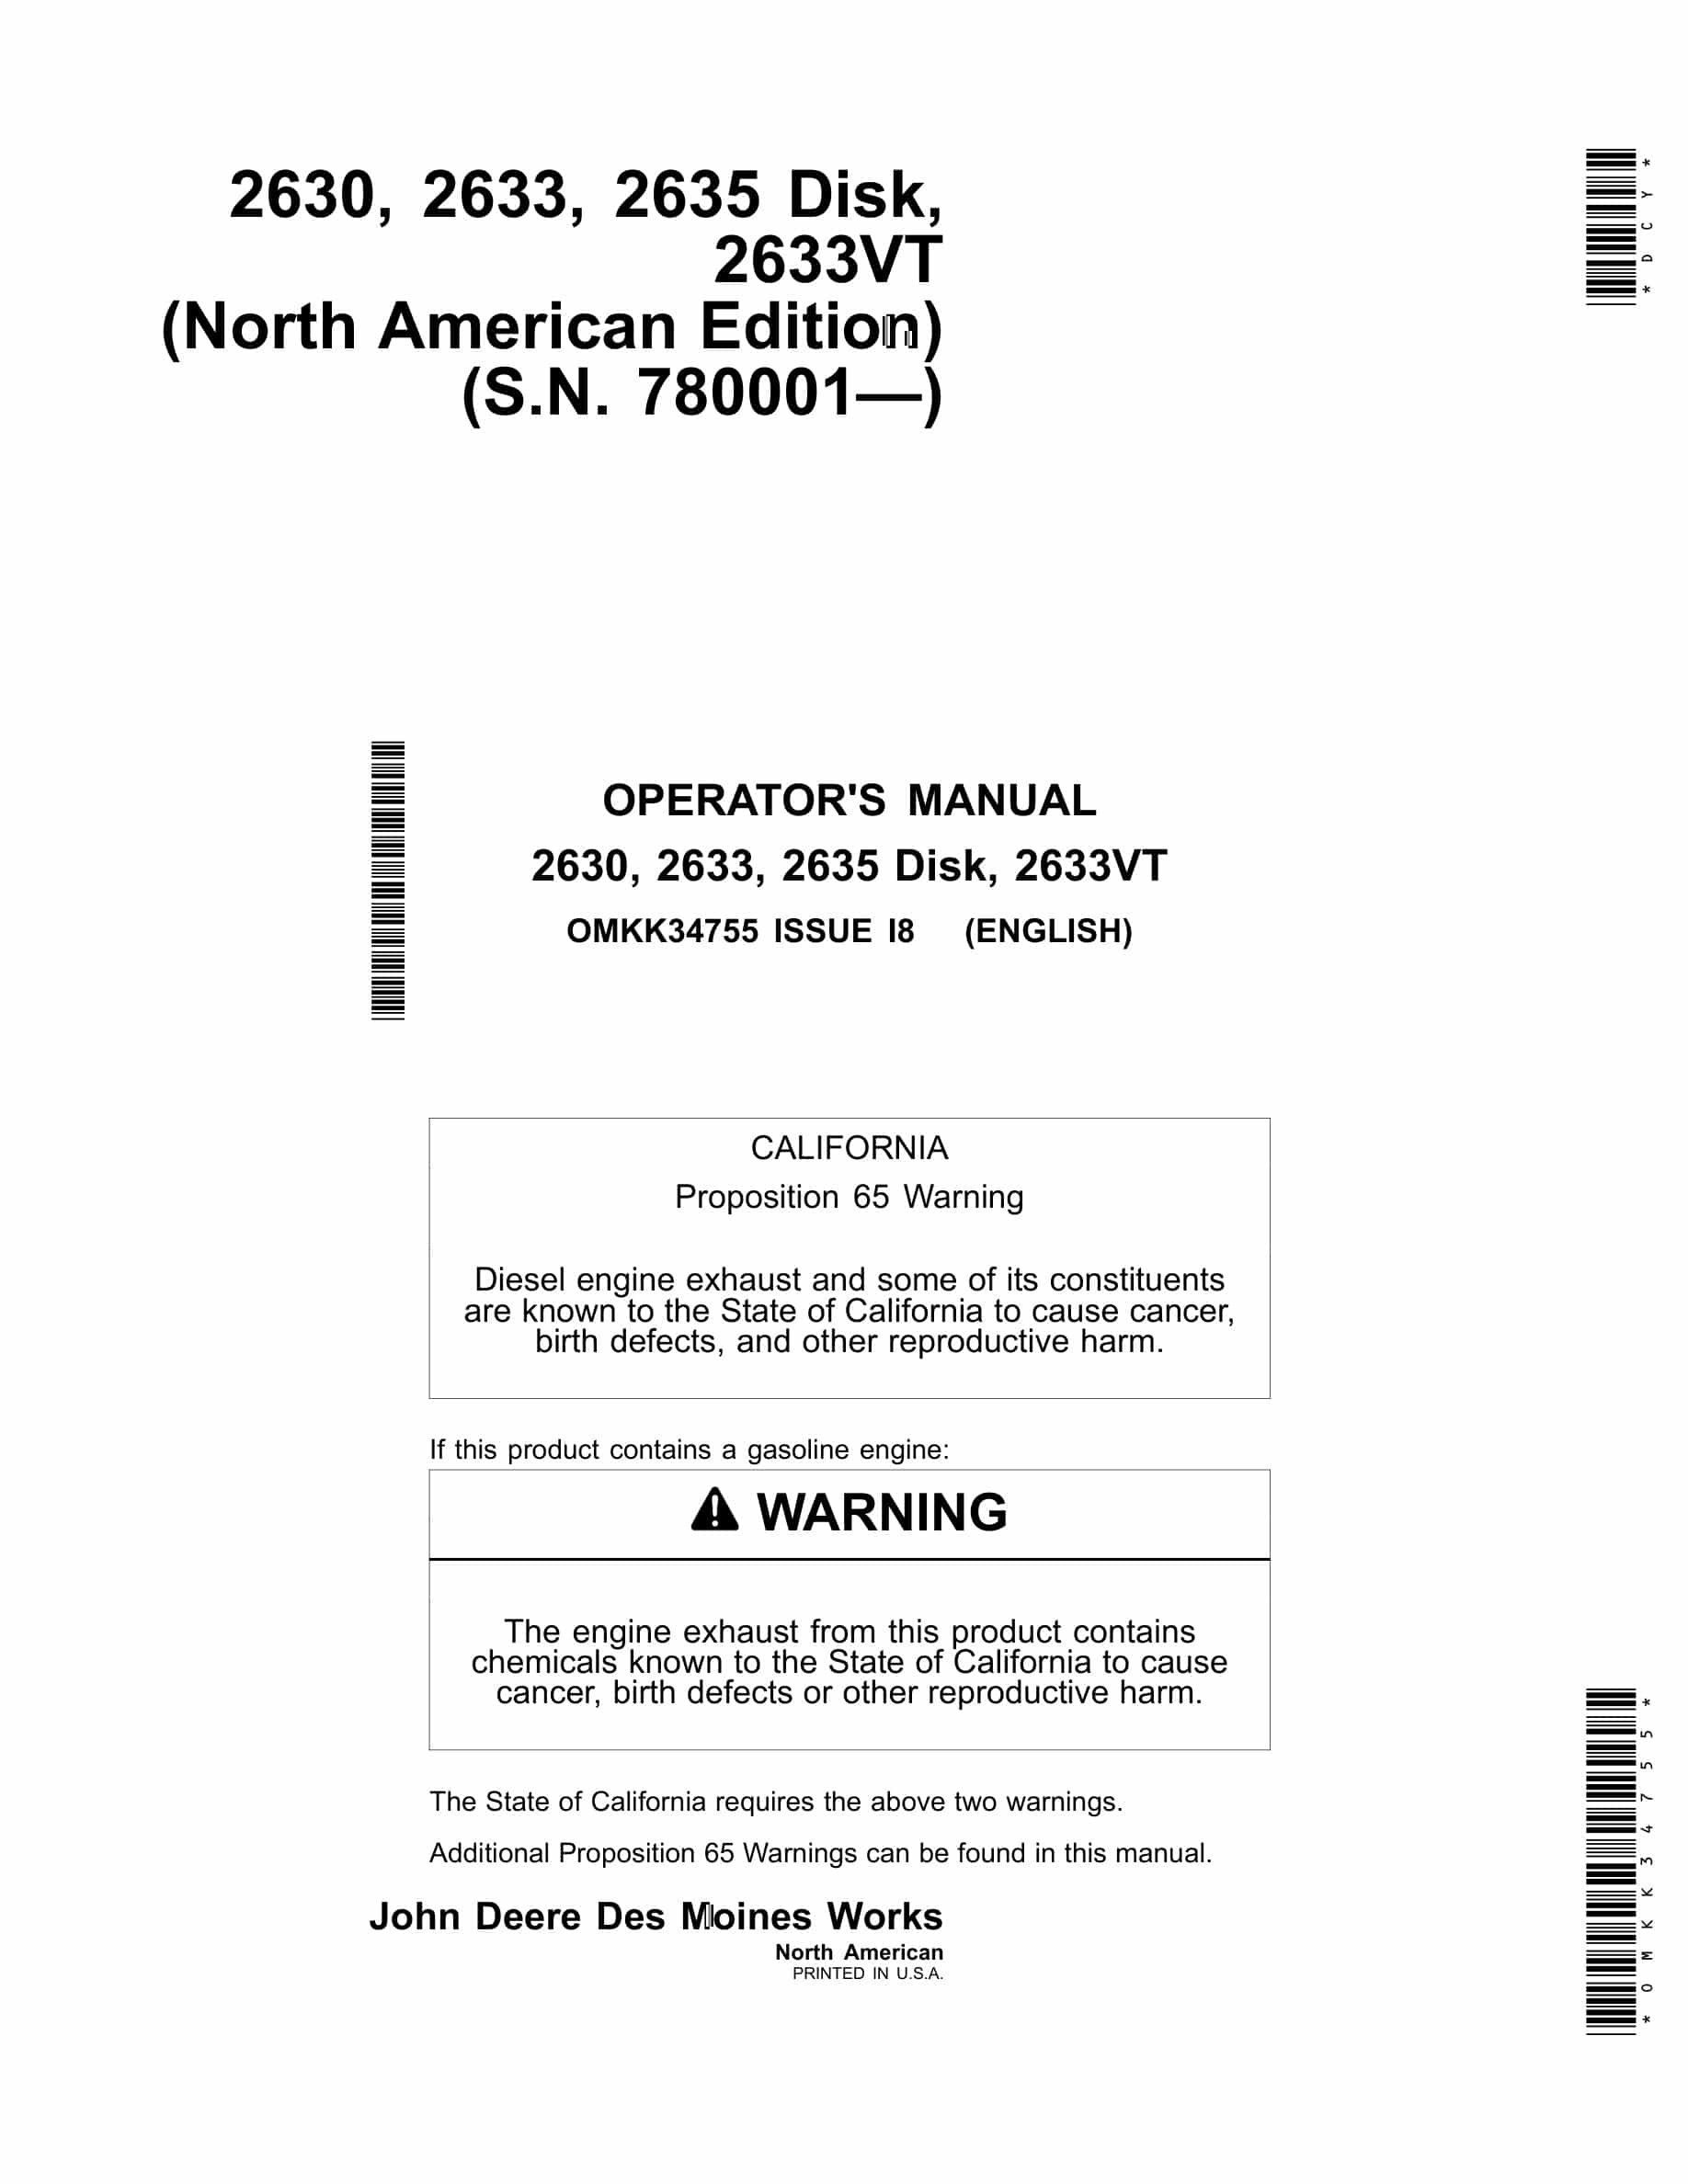 John Deere 2630, 2633, 2635, 2633VT Disk Operator Manual OMKK34755-1